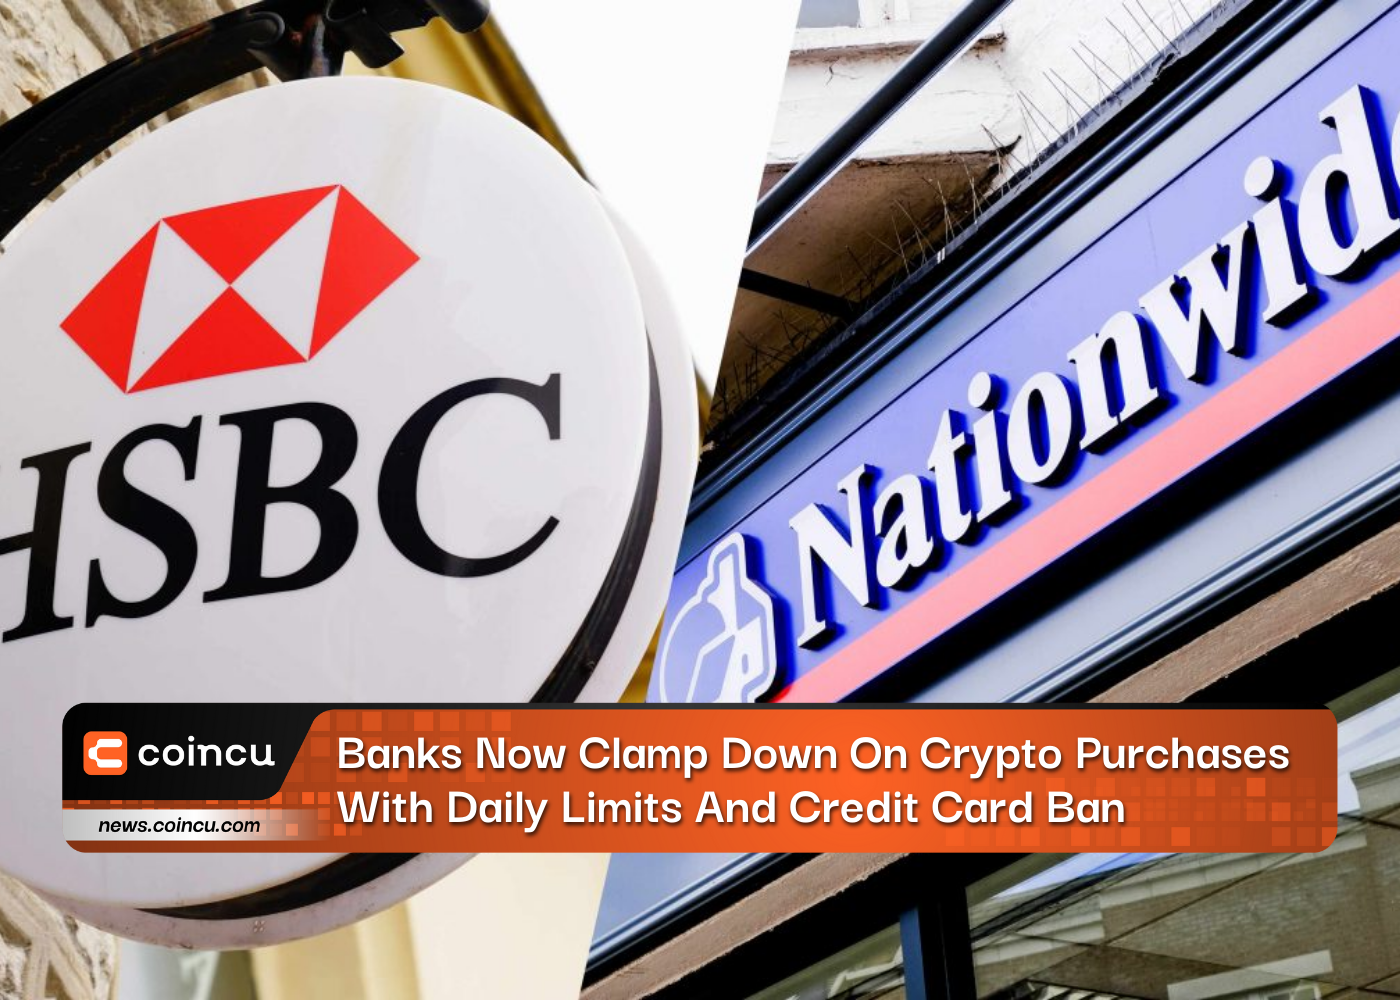 Банки теперь ограничивают покупки криптовалюты с помощью ежедневных лимитов и запрета на кредитные карты